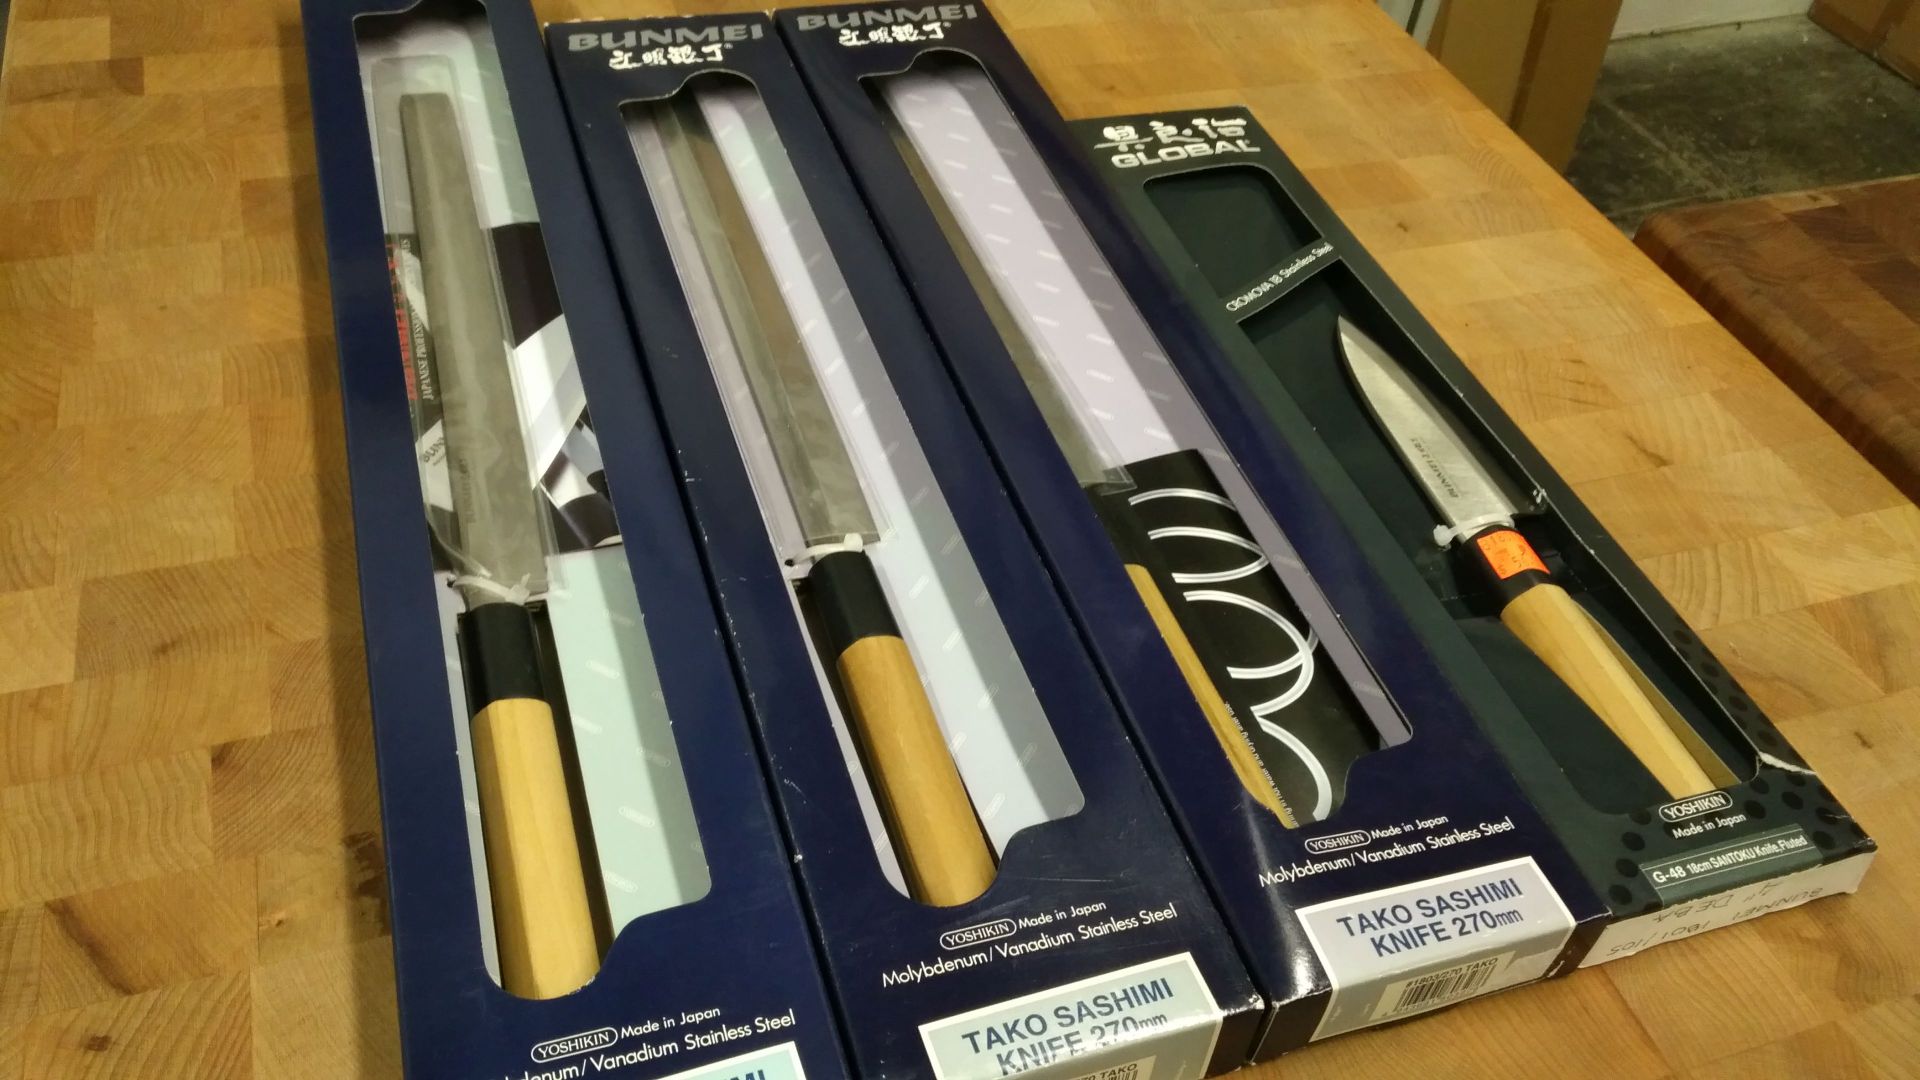 10.5" Tako Sashimi Knives (x3), 4" (18cm) Deba Knife - Lot of 4 Knives